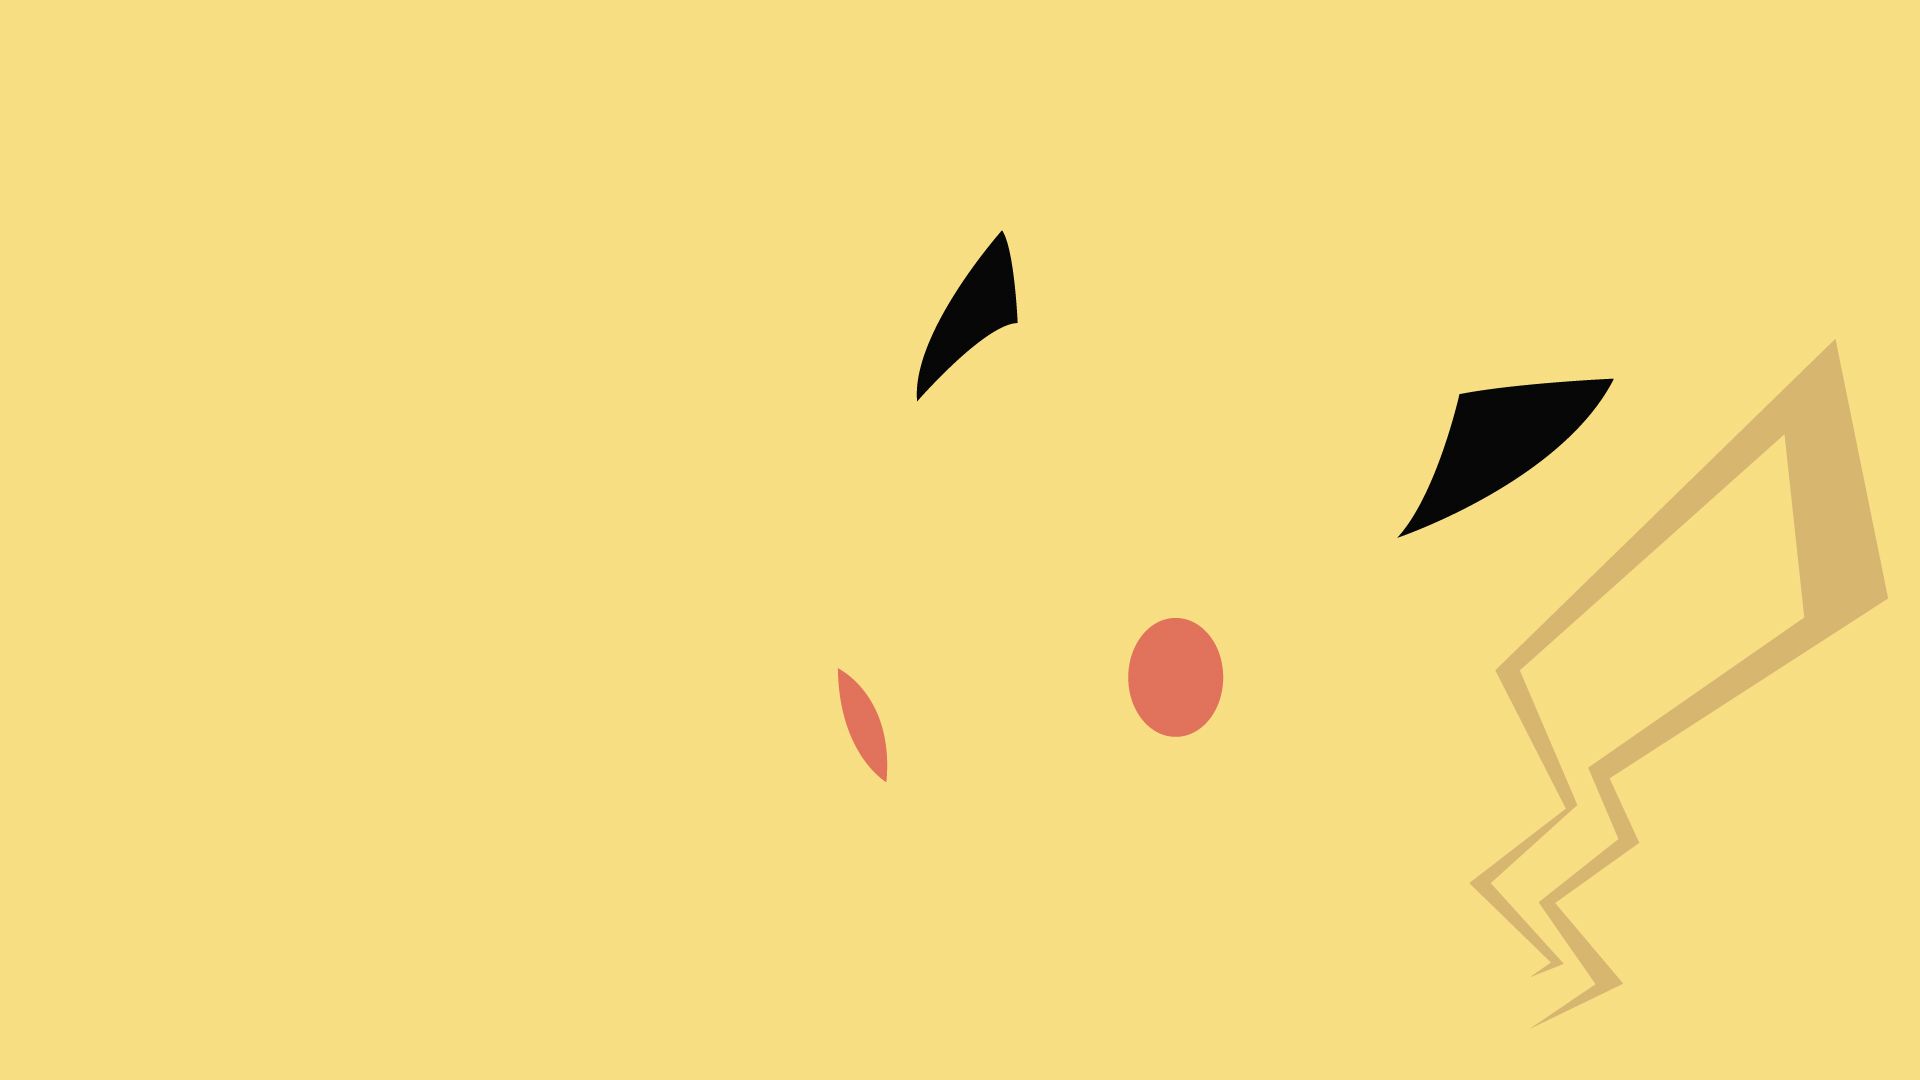 Pikachu Wallpaper , HD Wallpaper & Backgrounds